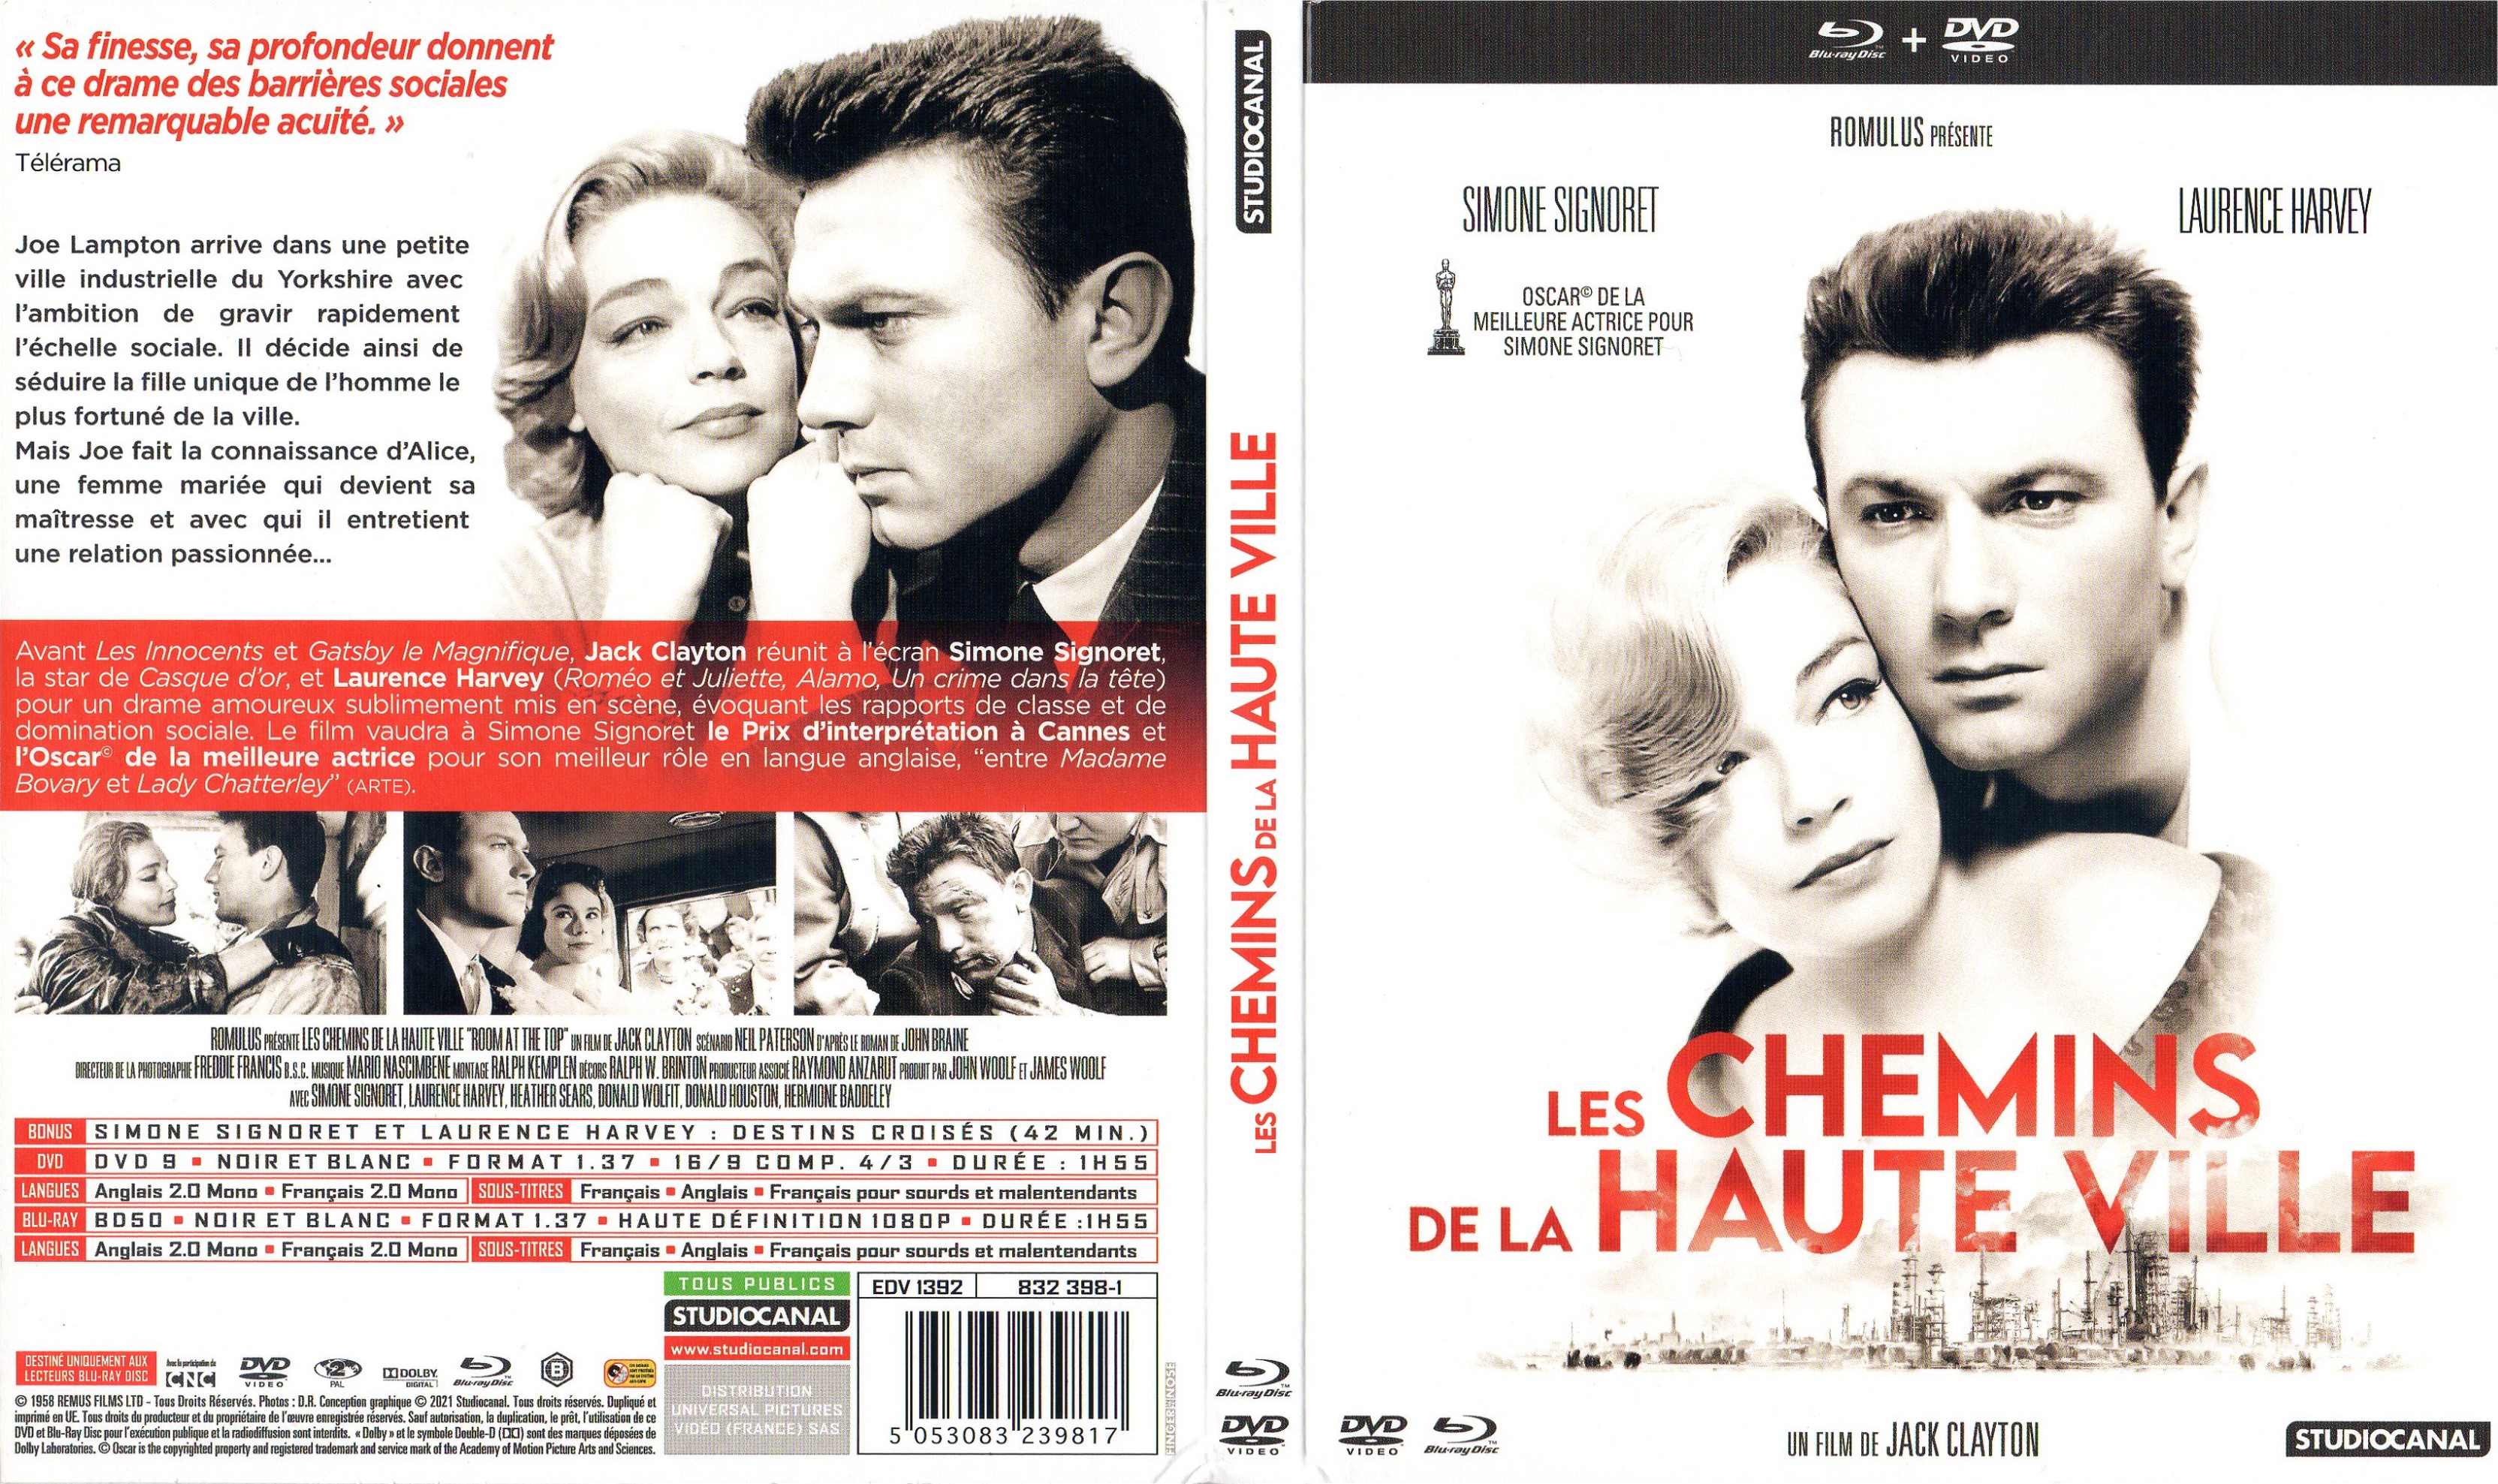 Jaquette DVD Les chemins de la haute ville (BLU-RAY)